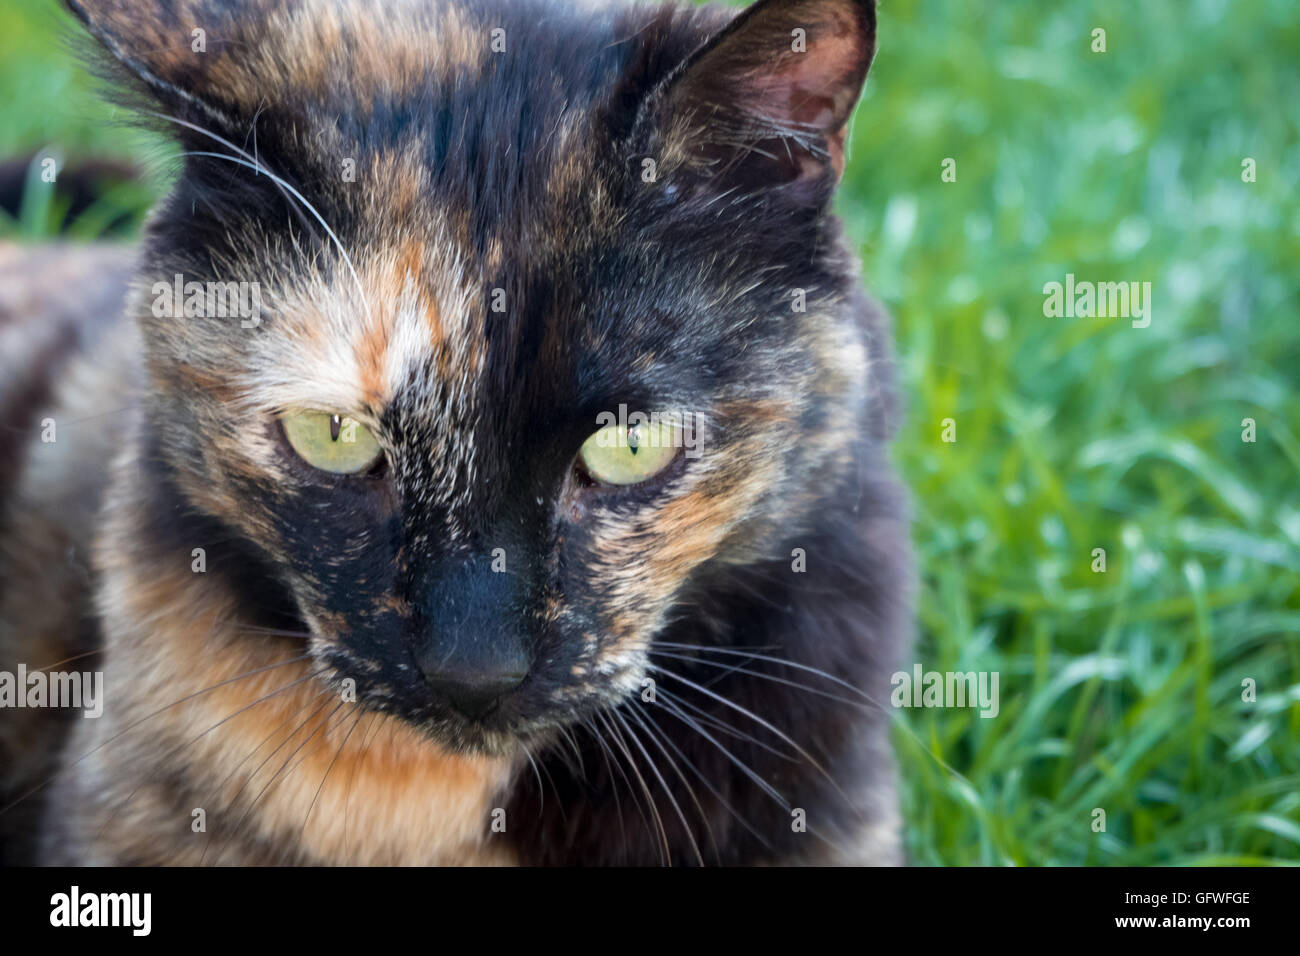 A Fierce looking cat on lawn Stock Photo